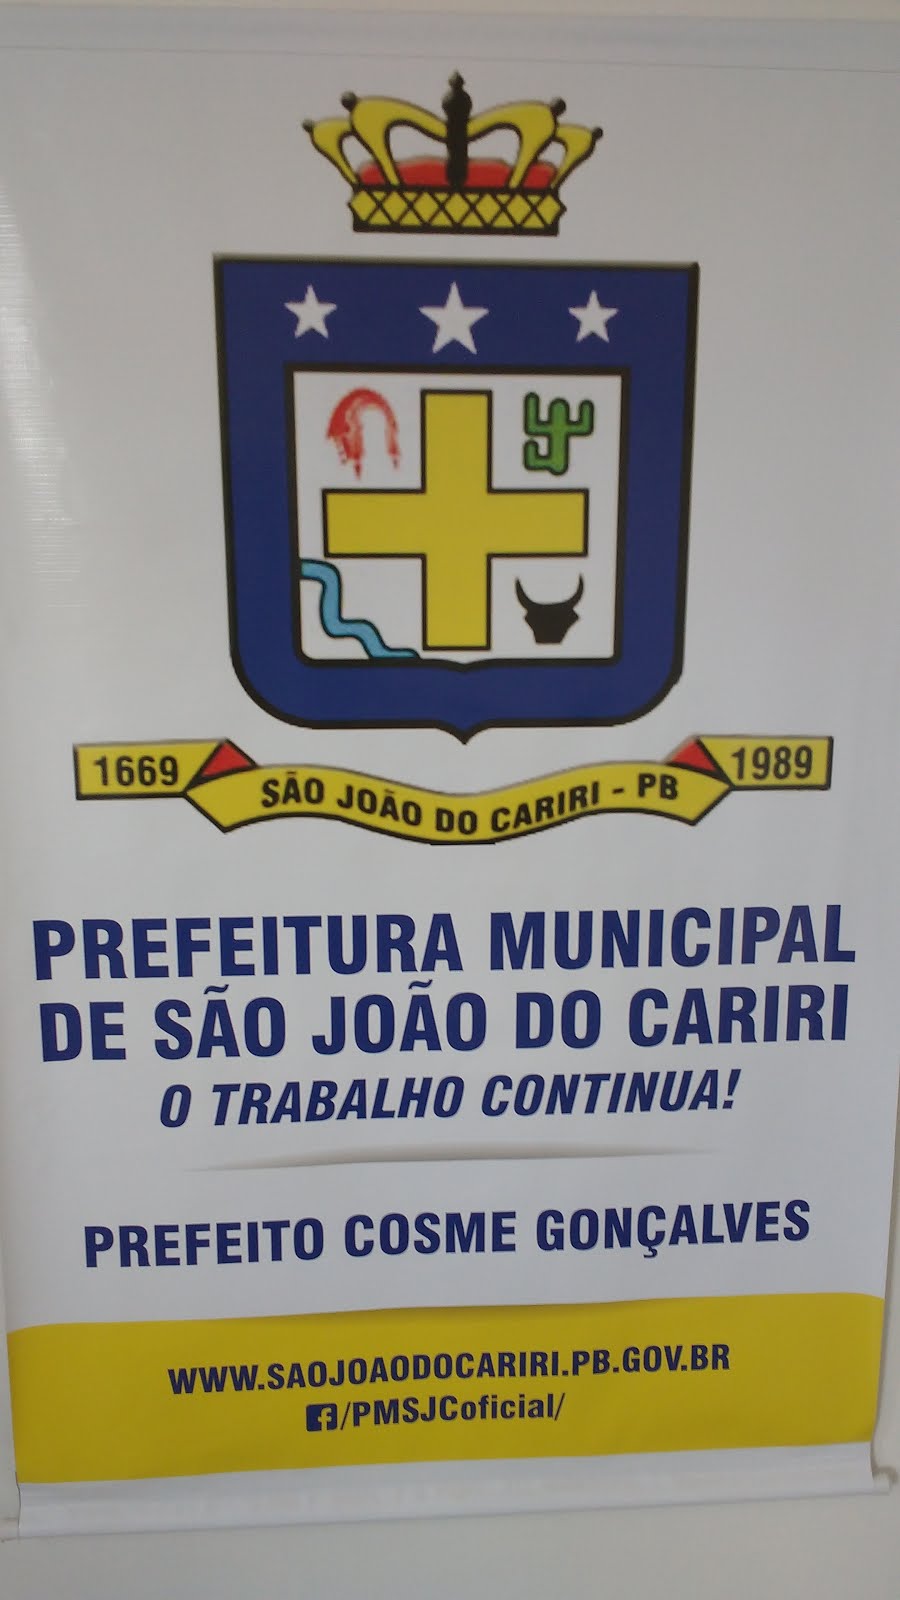                   P. M. DE SÃO JOÃO DO CARIRI